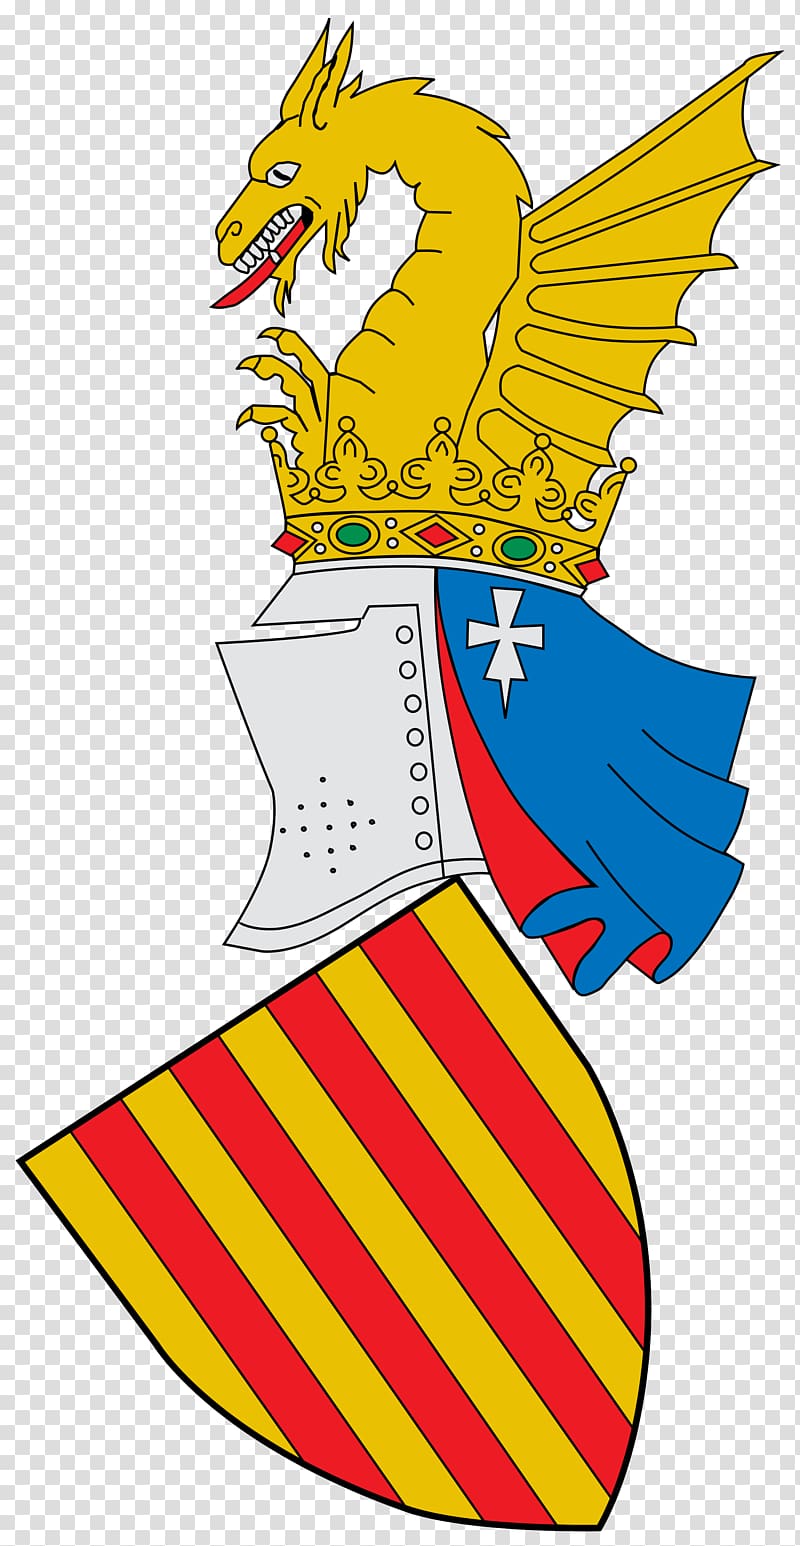 Kingdom of Valencia Tirant lo Blanch Coat of arms Escudo da Comunidade Valenciana, program ape transparent background PNG clipart